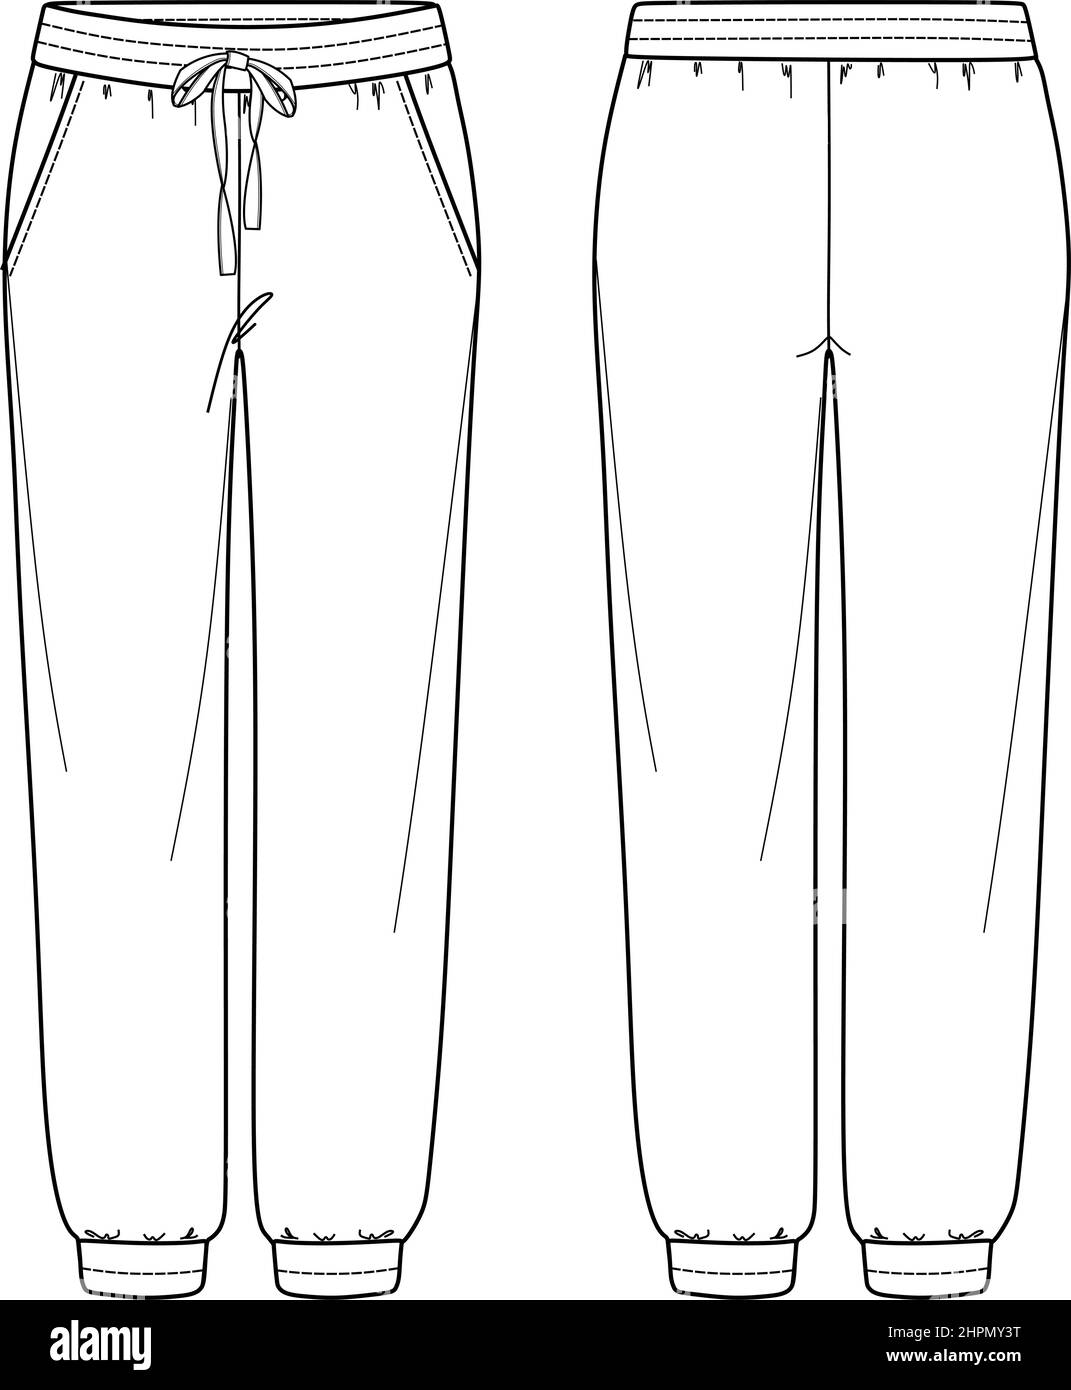 Vector unisex jogging mode CAD, femme pantalon de survêtement avec poches latérales dessin technique, modèle, esquisse, plat. Pantalon en jersey ou tissu tissé avec f Illustration de Vecteur